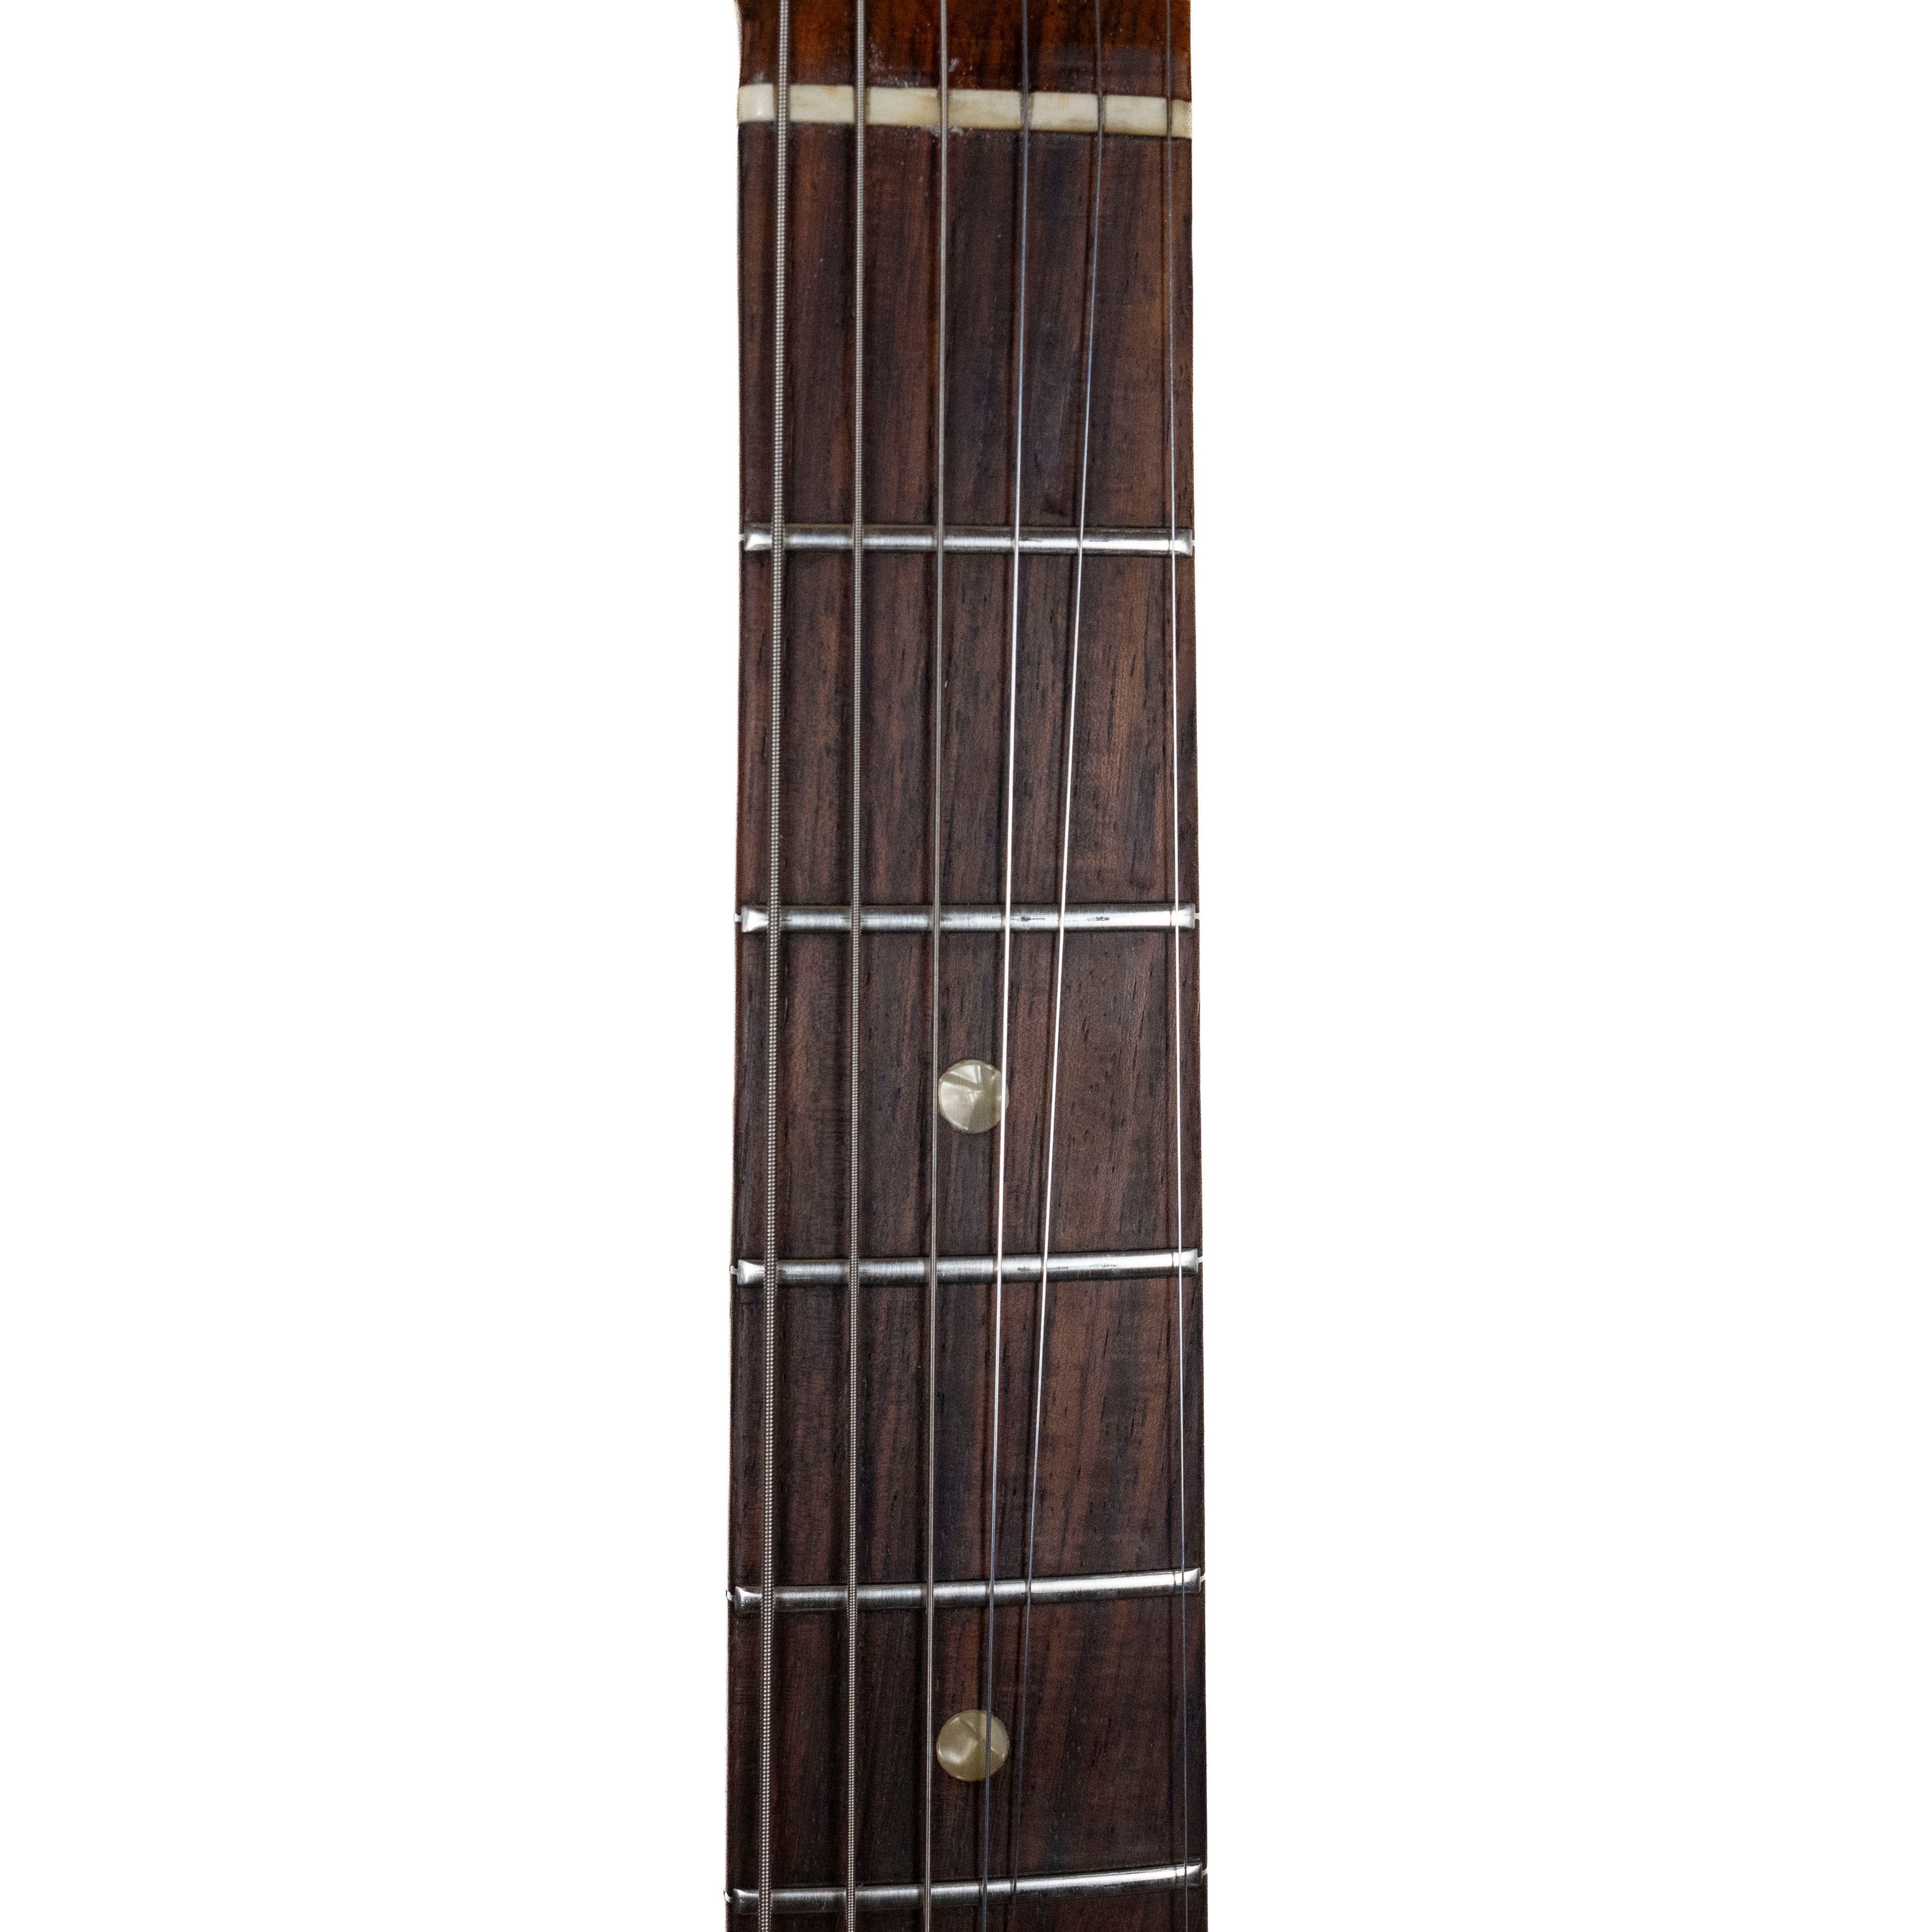 Fender 1966 Stratocaster Sunburst